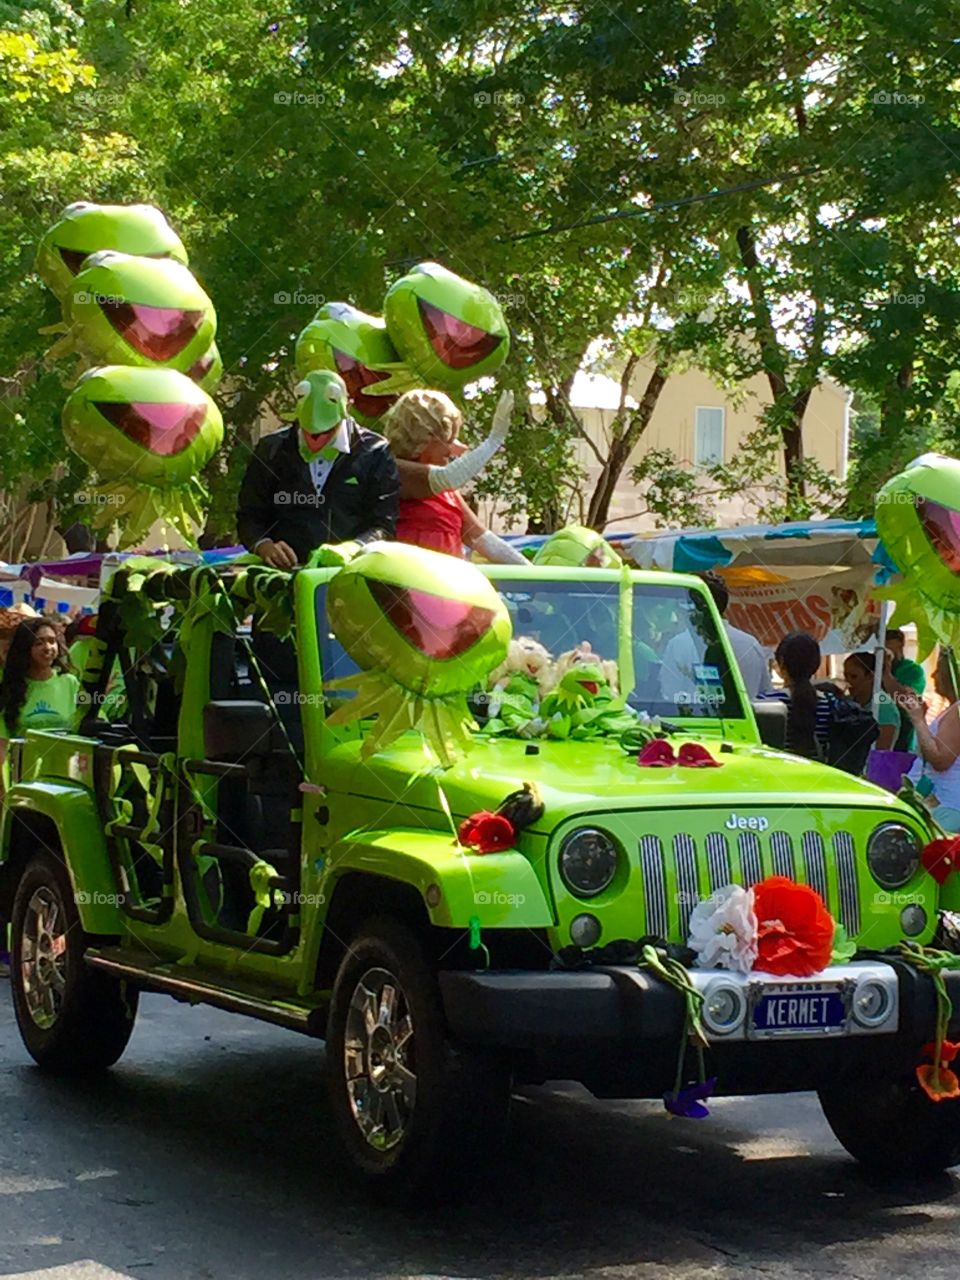 Kermit Jeep